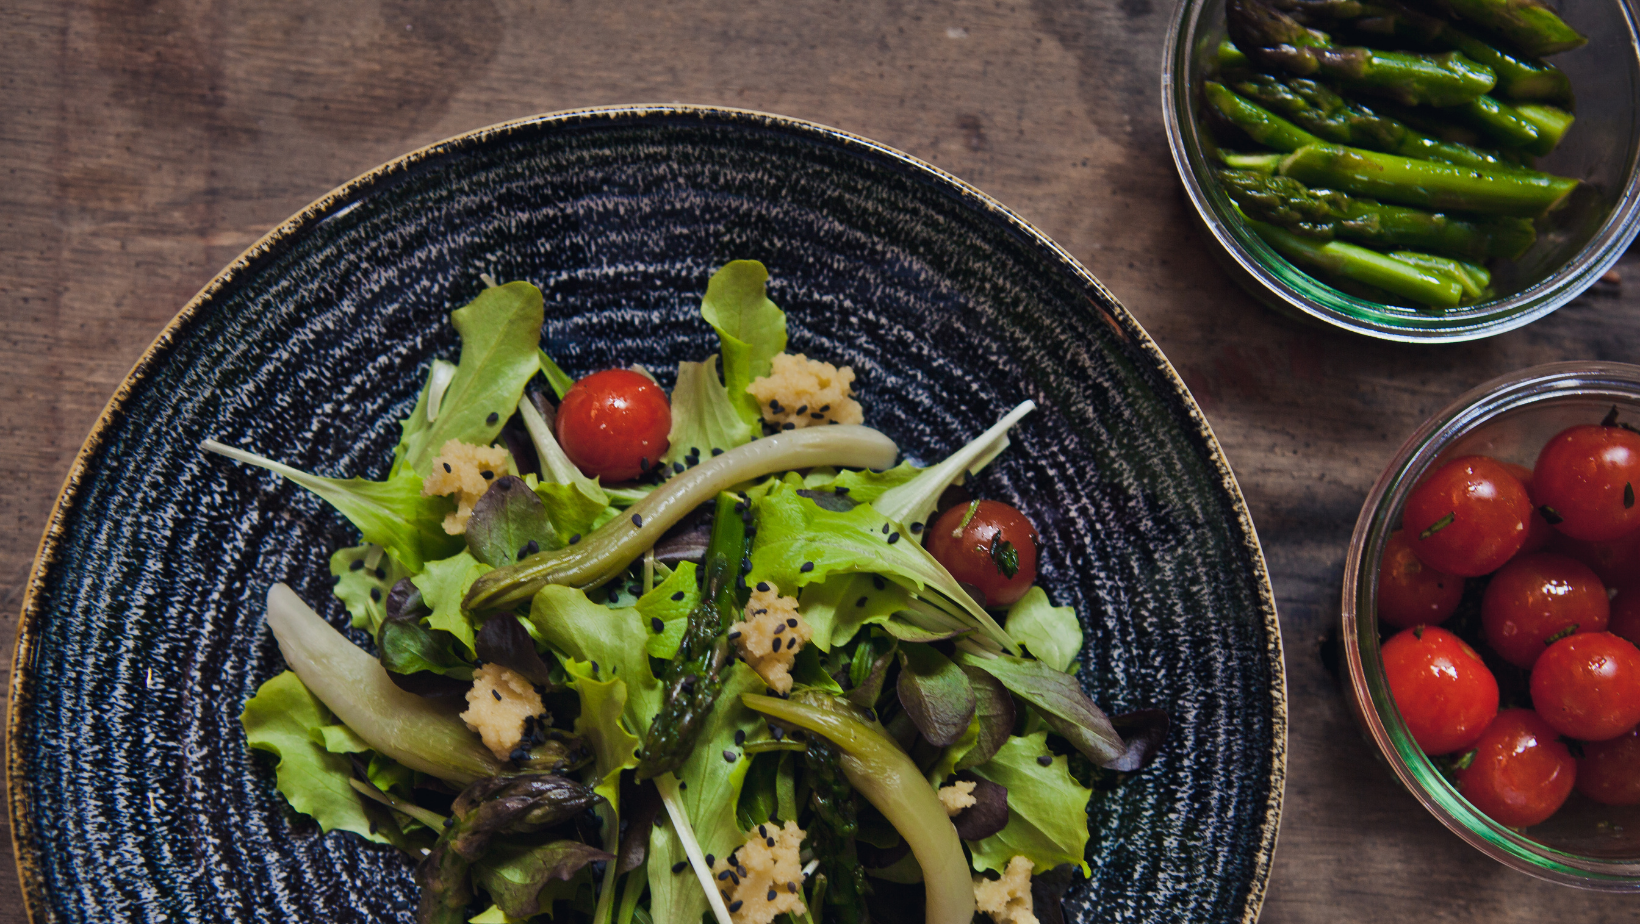 solata s spomladanskim zelenjem in šparglji v keramični skodelici - slika recepta